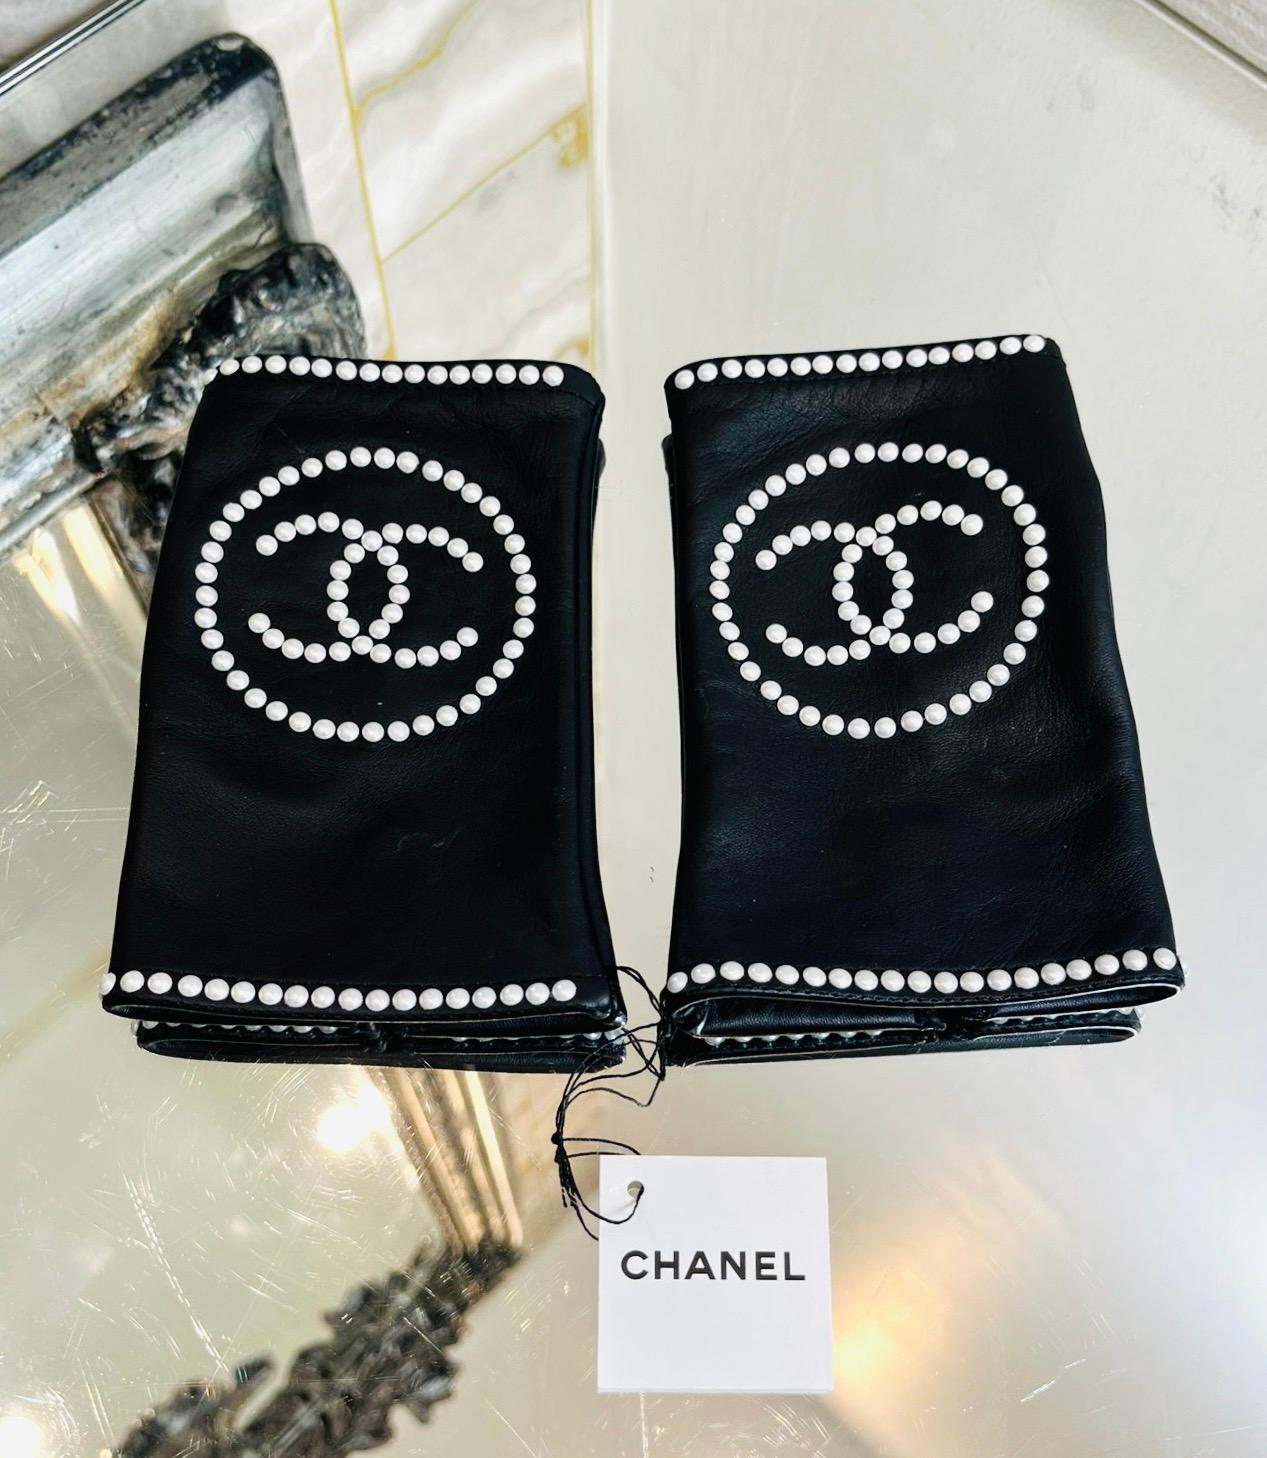 Neuf - Chanel 'CC' Logo Leather & Pearl Fingerless Gloves

Gants noirs et lisses, ornés du logo 